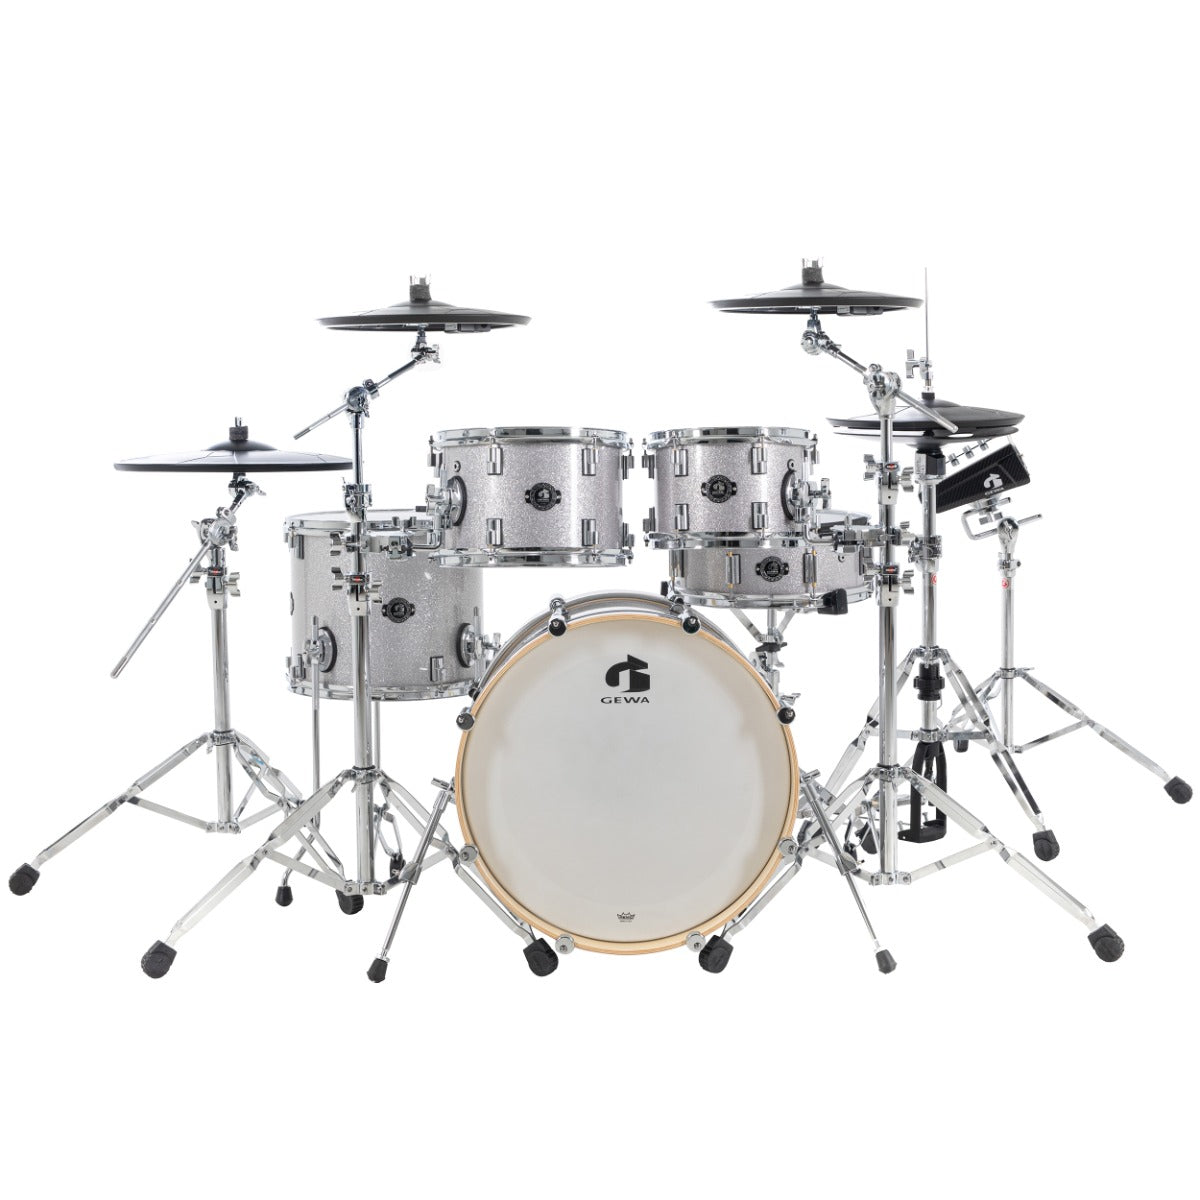 GEWA G9 Pro 5 SE Electronic Drum Set - Silver Sparkle, View 1